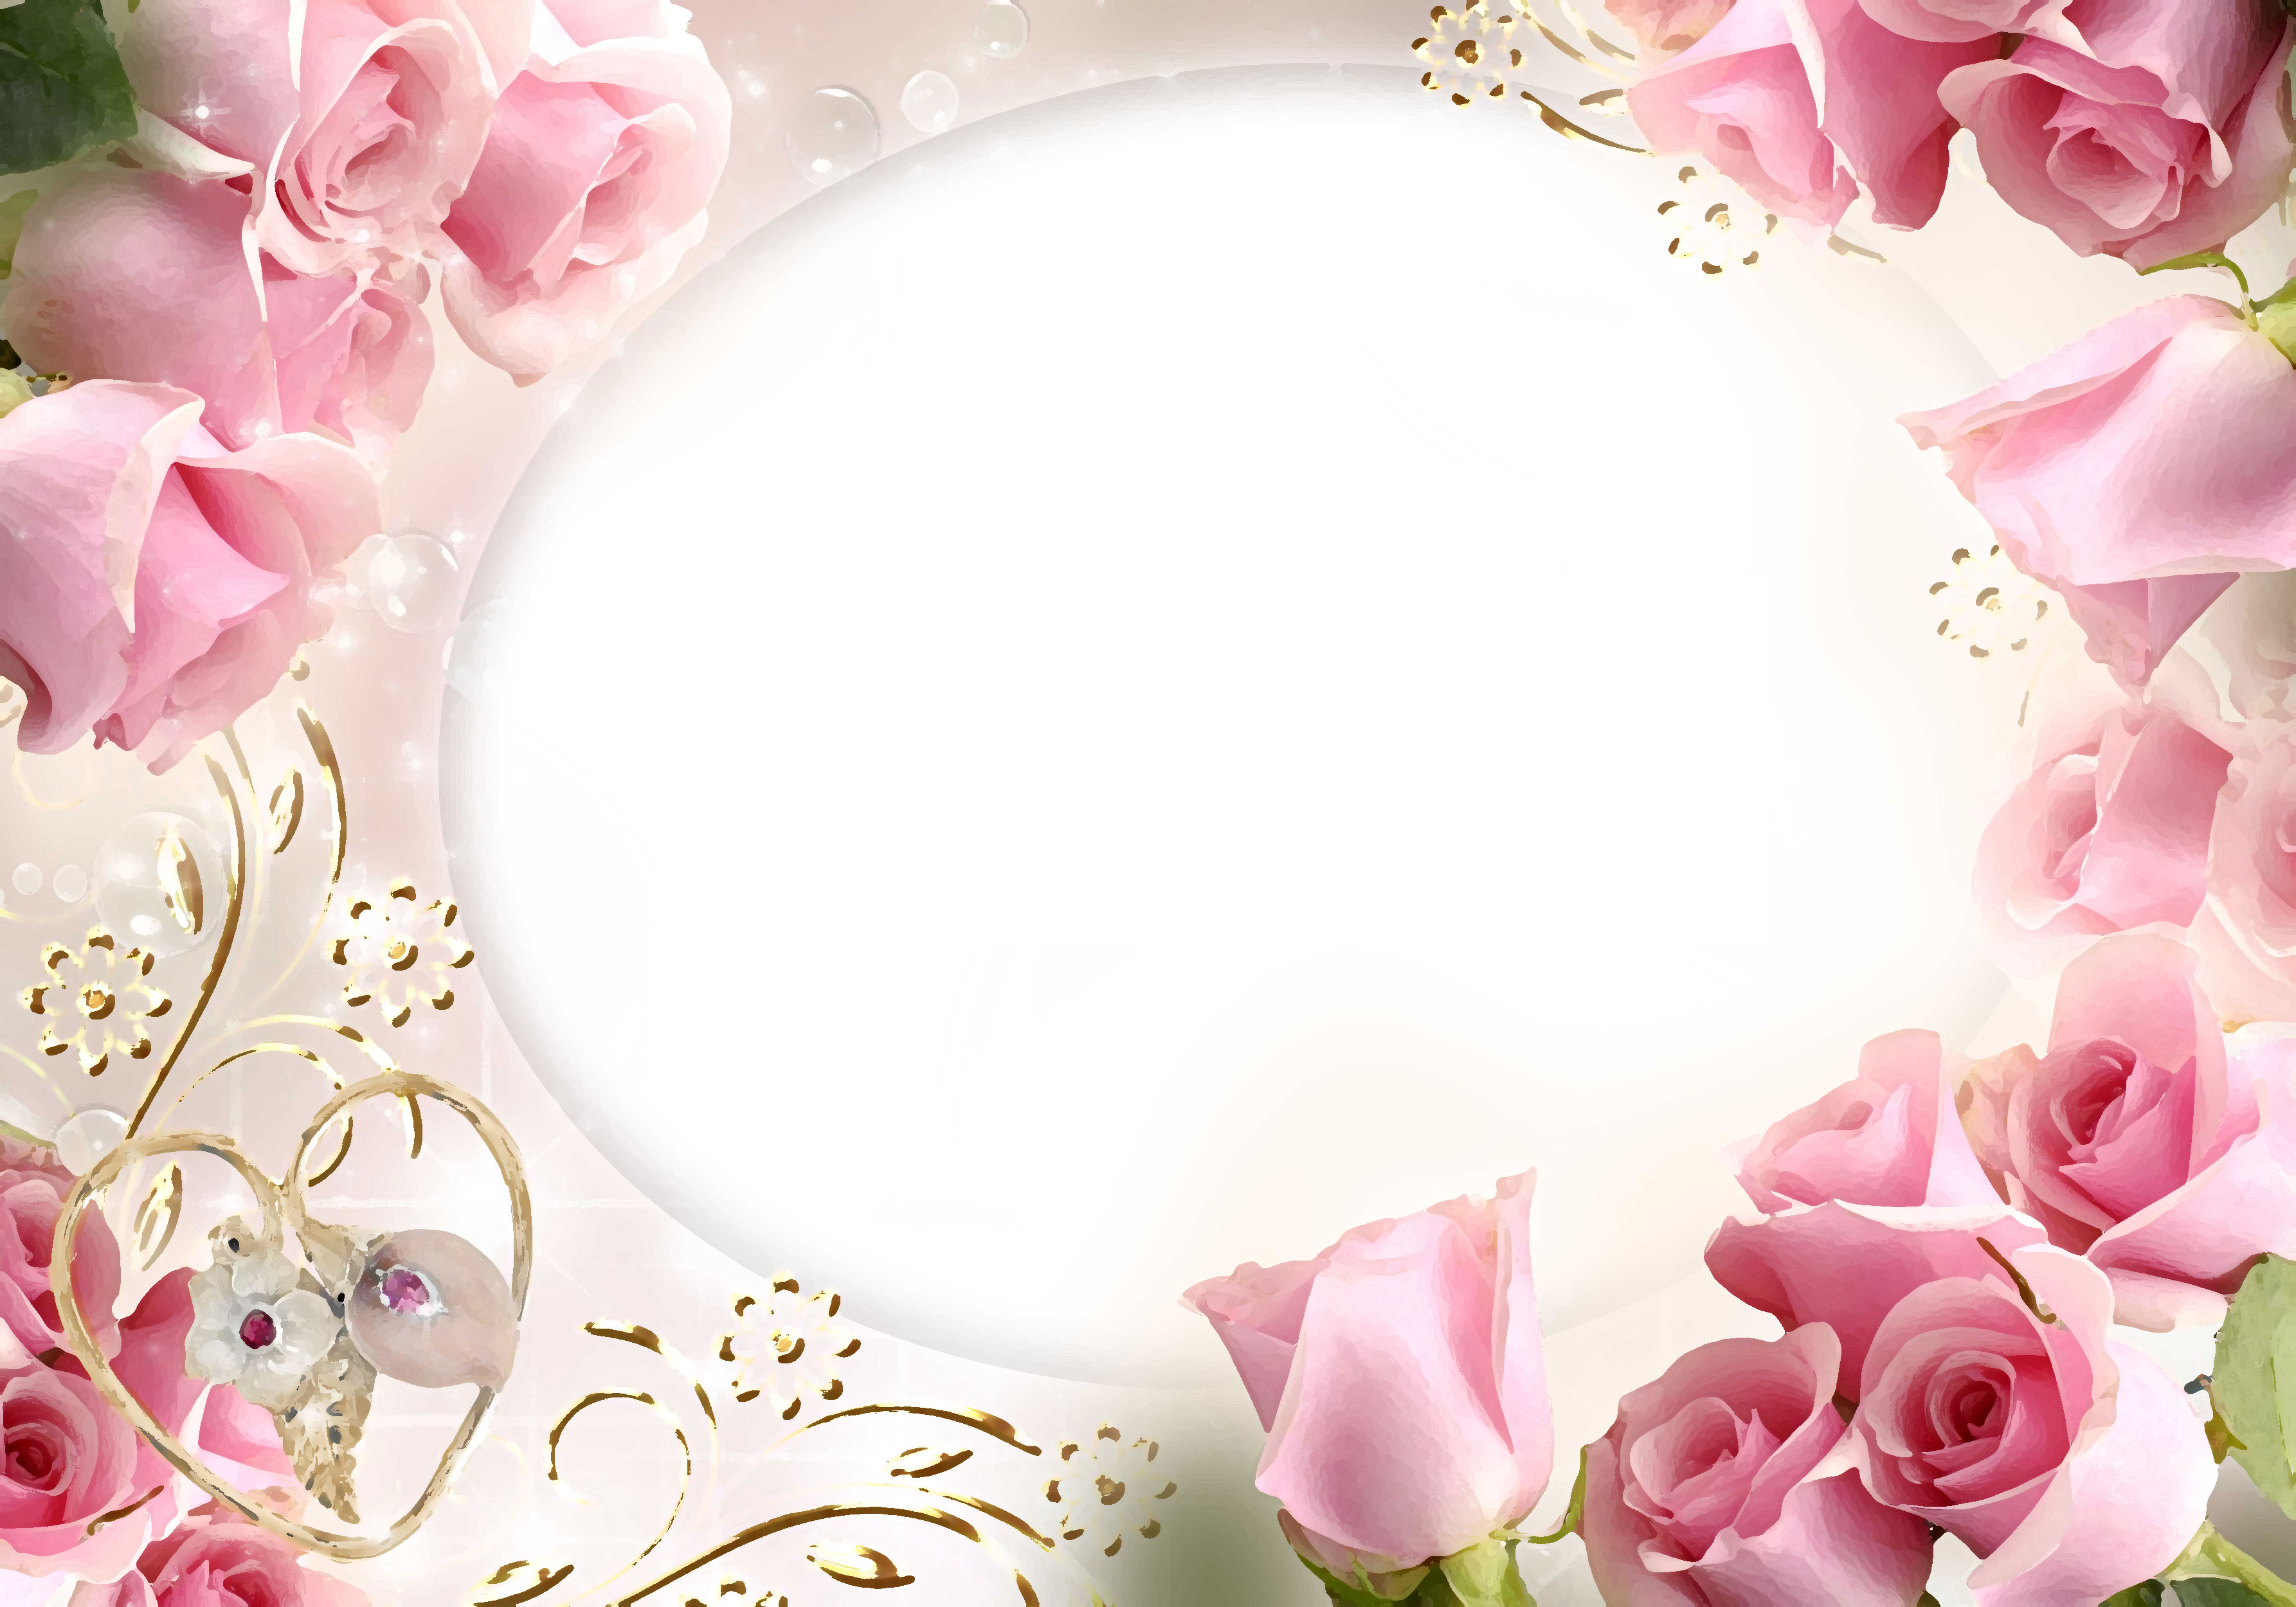 壁紙 背景イラスト 花のフレーム 外枠 No 093 ピンクのバラ ハート